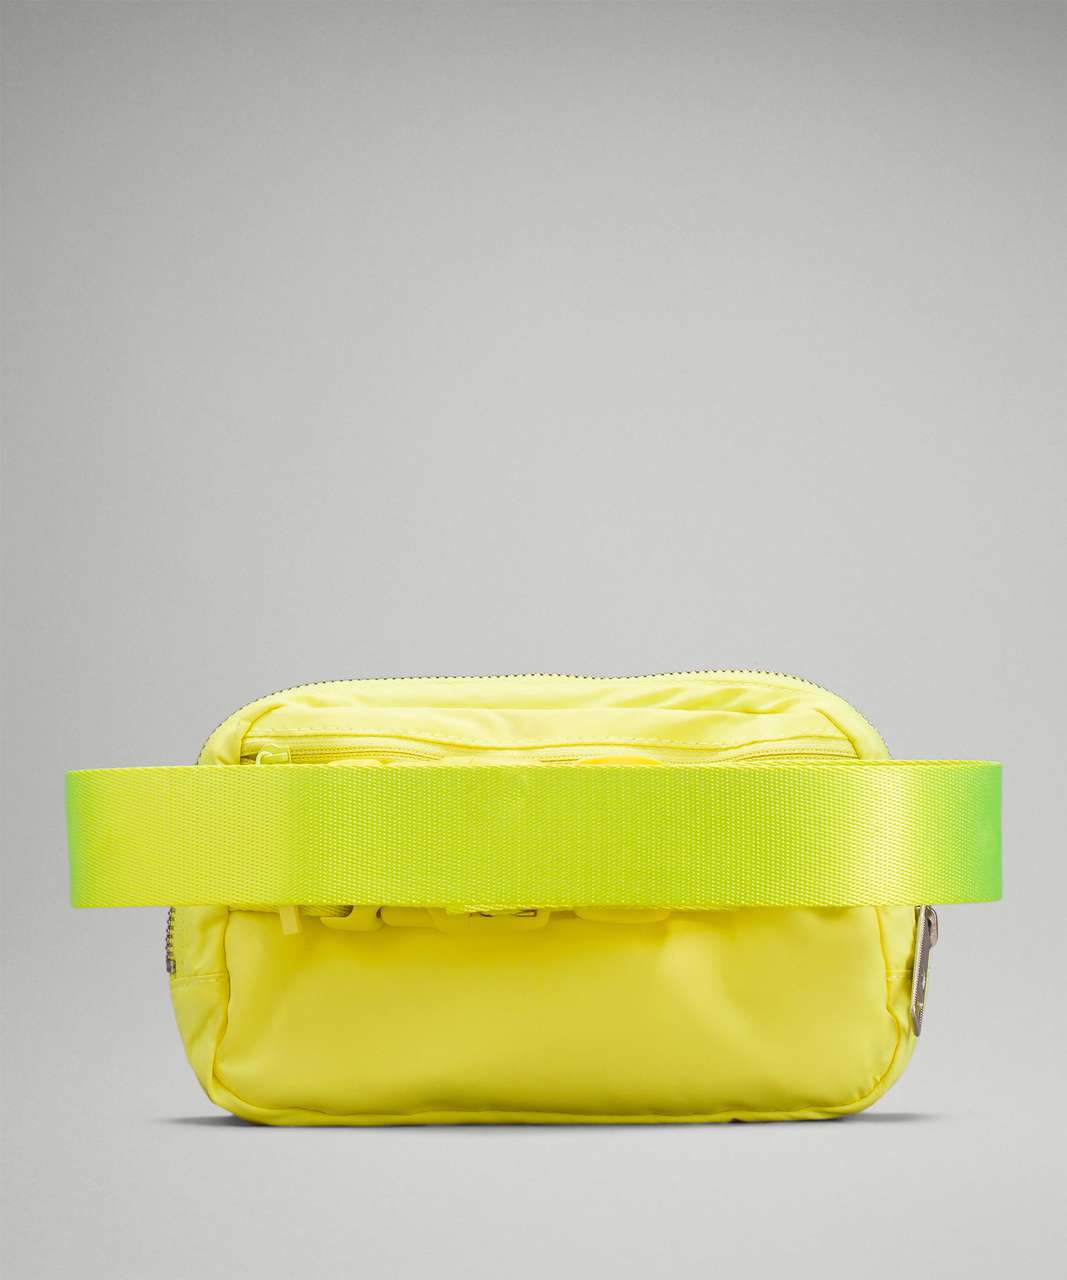 Lululemon Everywhere Belt Bag 1L - Electric Lemon